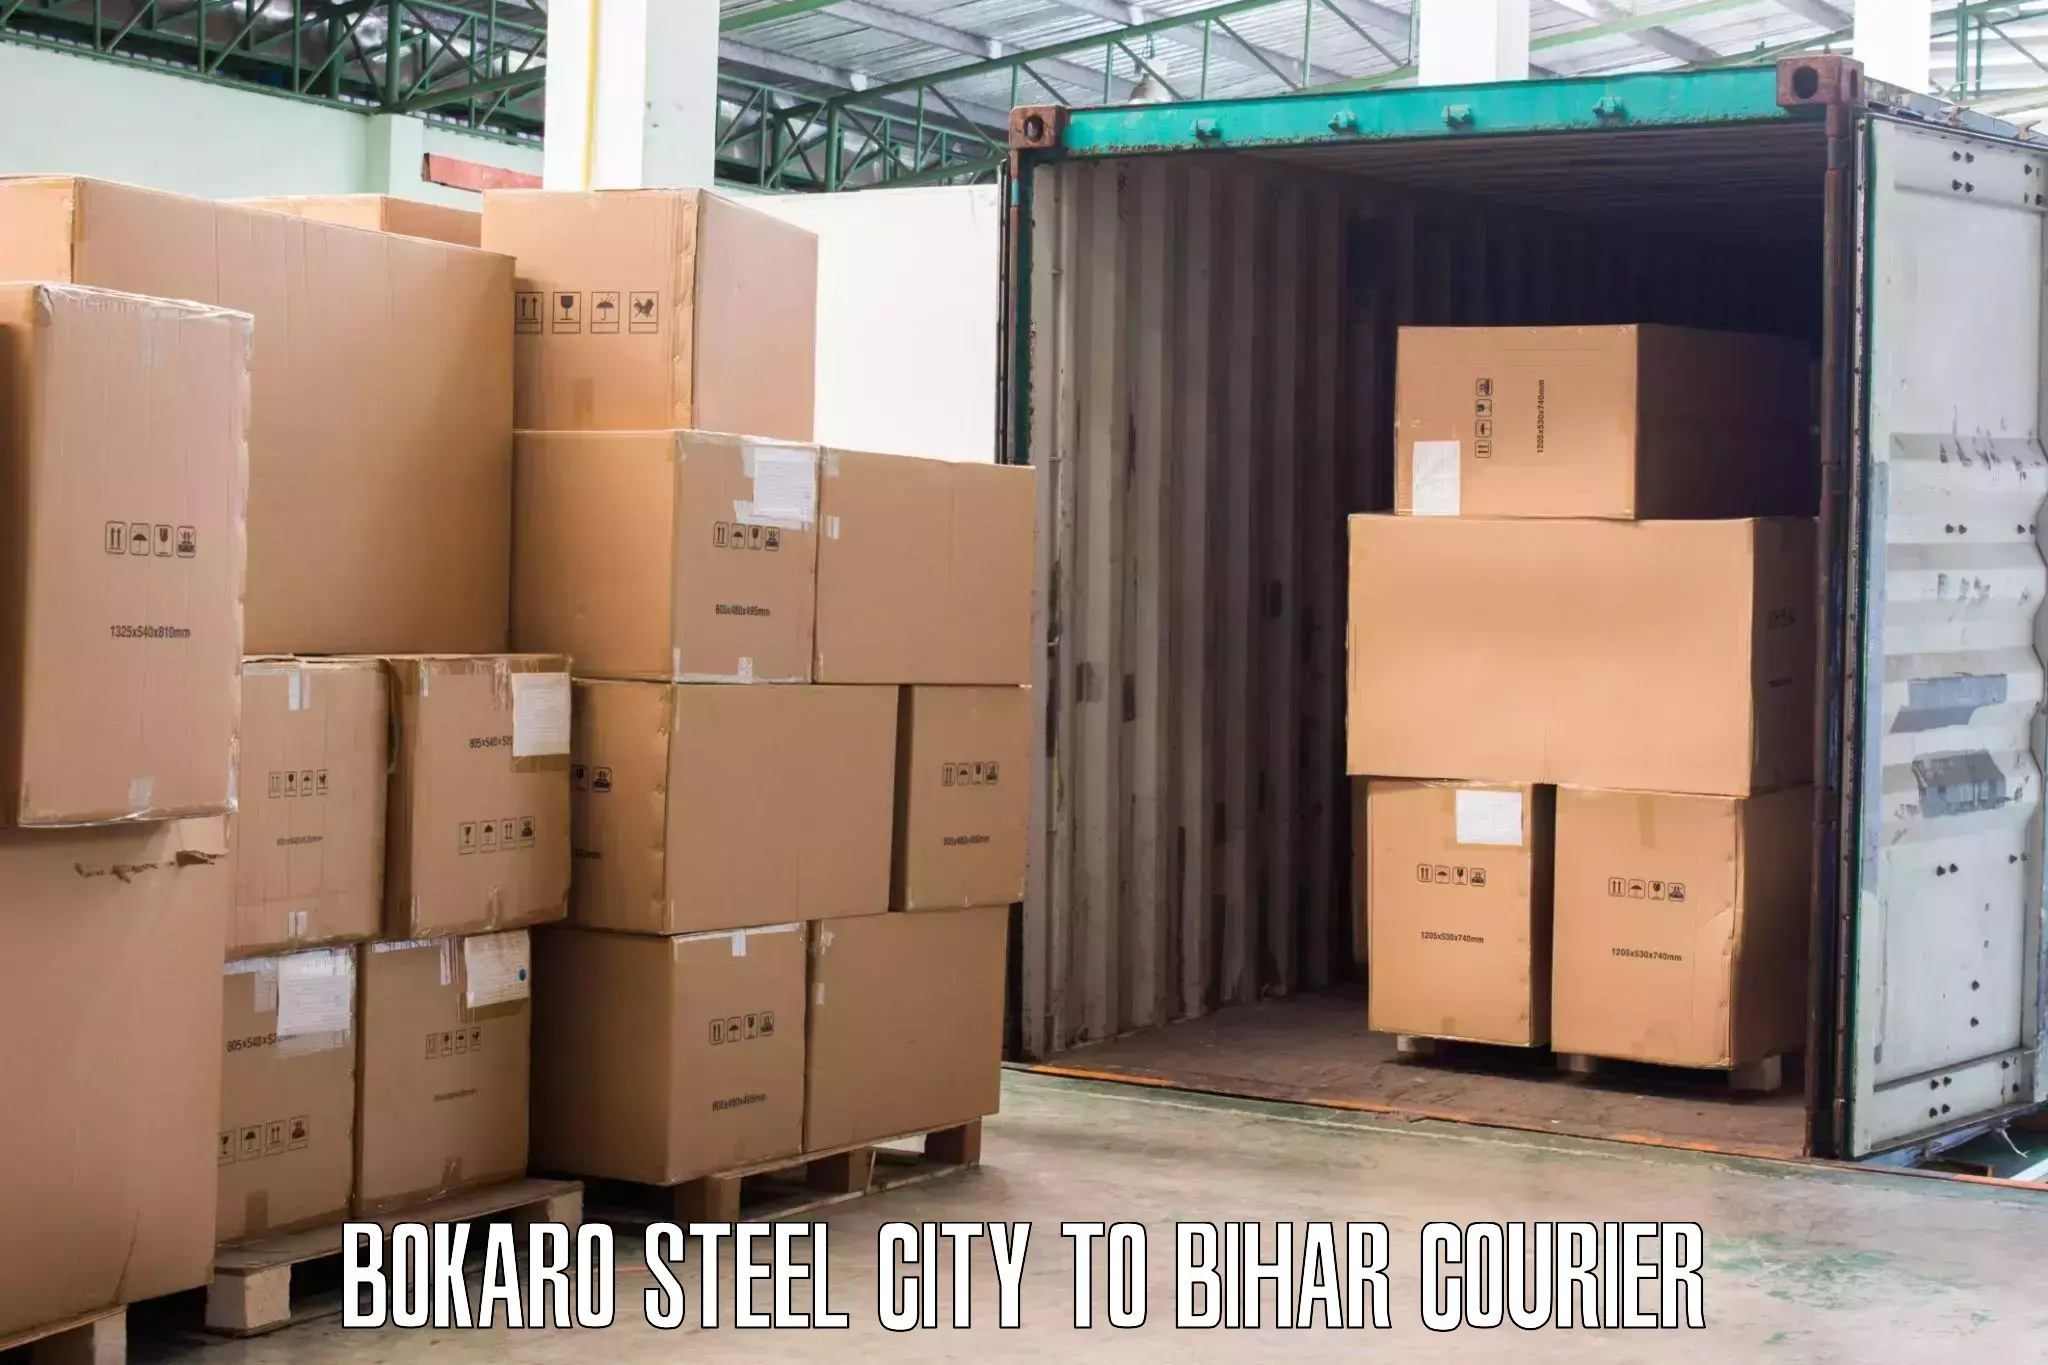 Professional moving company in Bokaro Steel City to Hazrat Jandaha